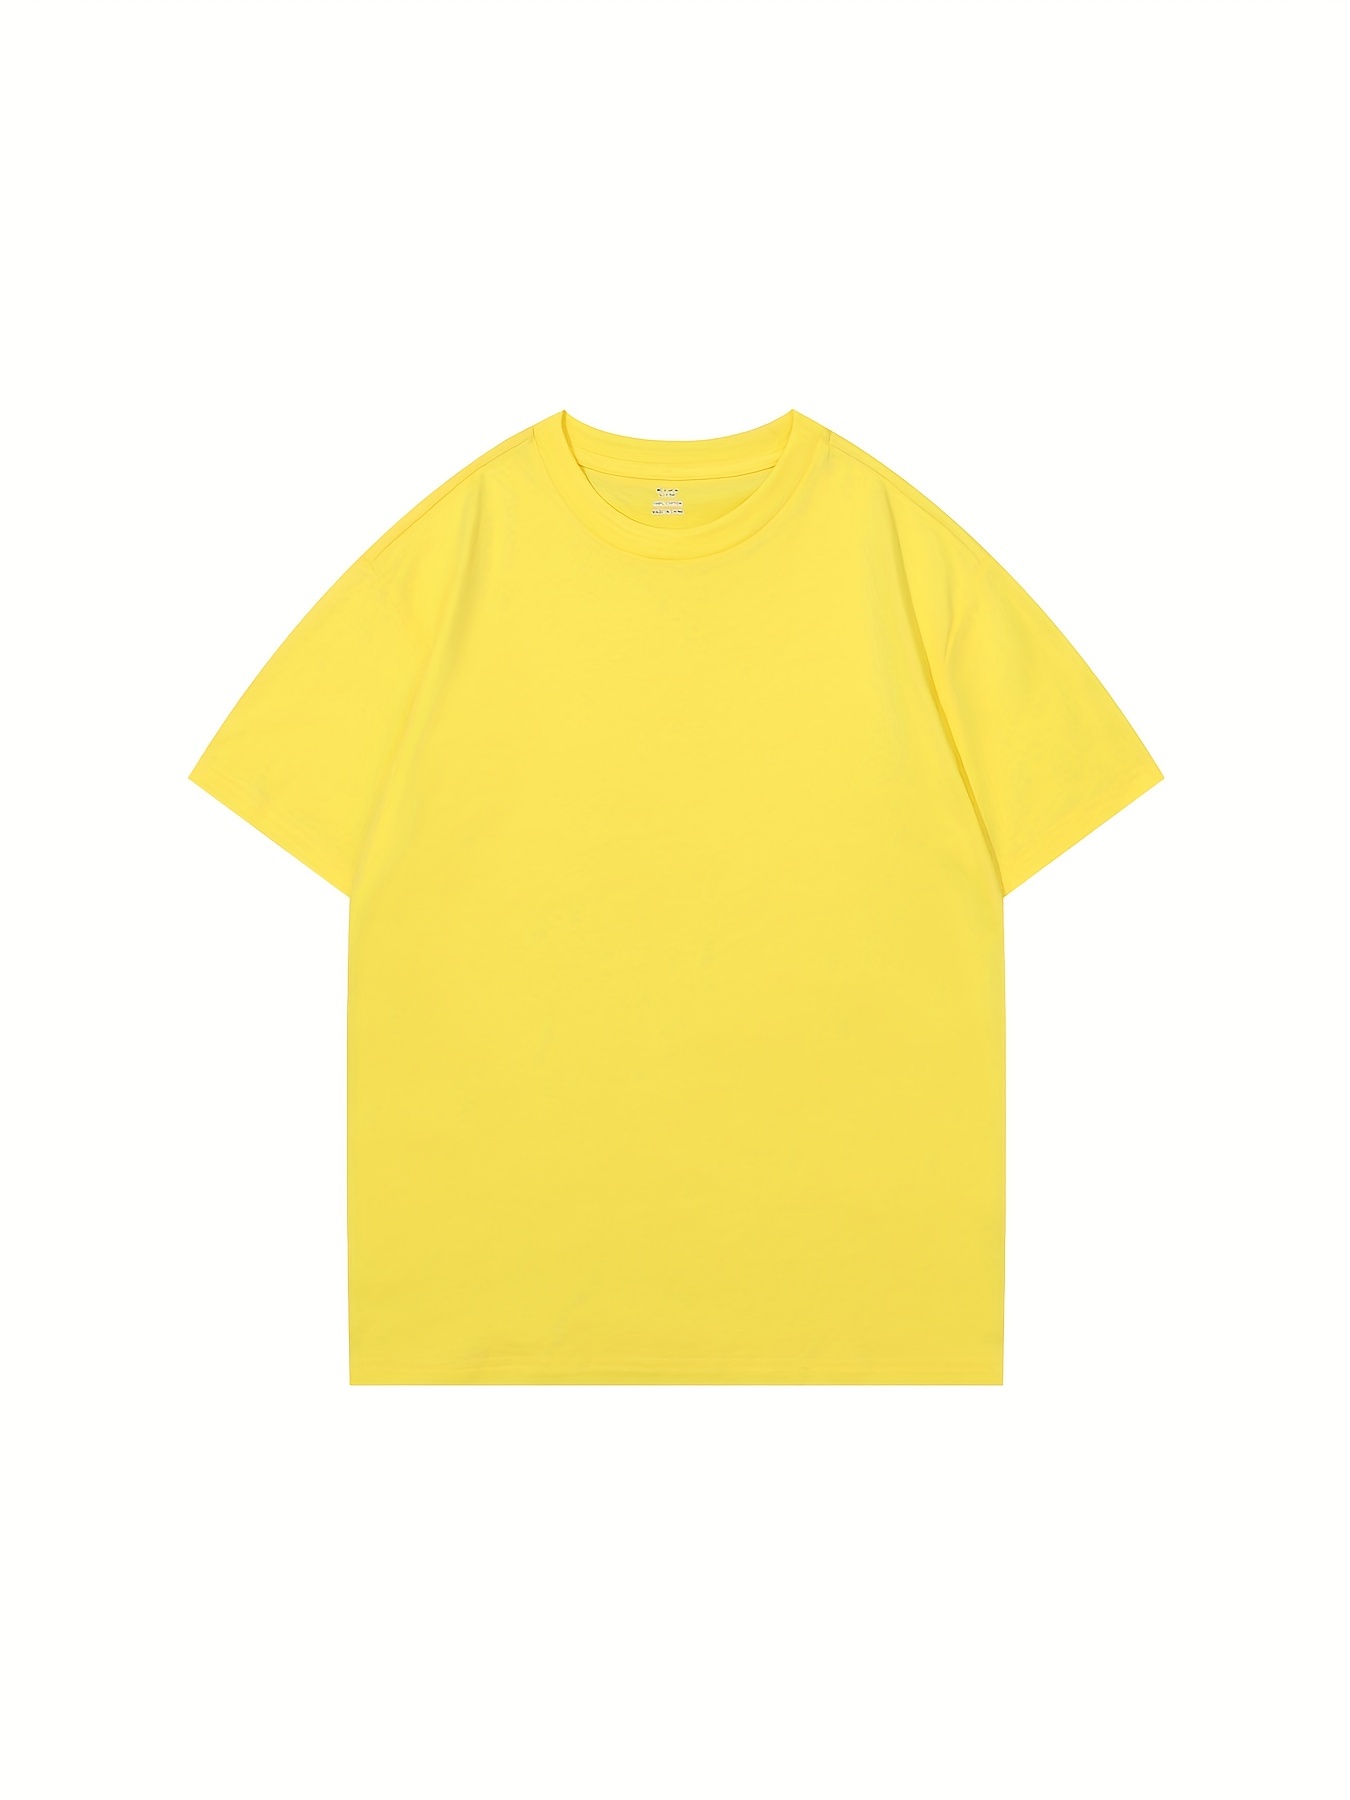 Yellow Shirt - Temu Philippines